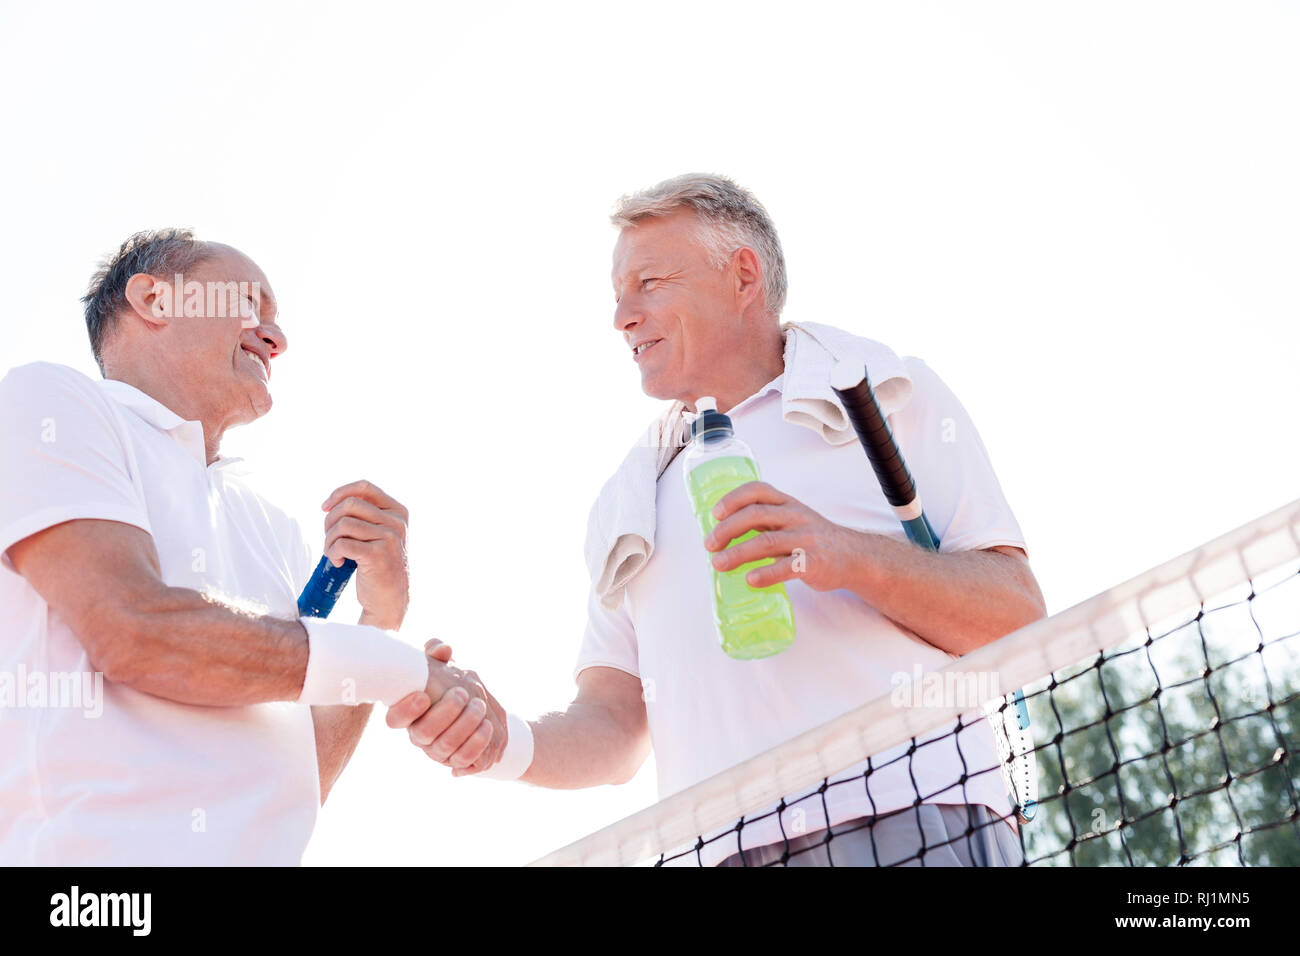 Basso angolo vista di uomini sorridenti si stringono la mano durante il riposo a tennis contro il cielo chiaro sulla giornata di sole Foto Stock